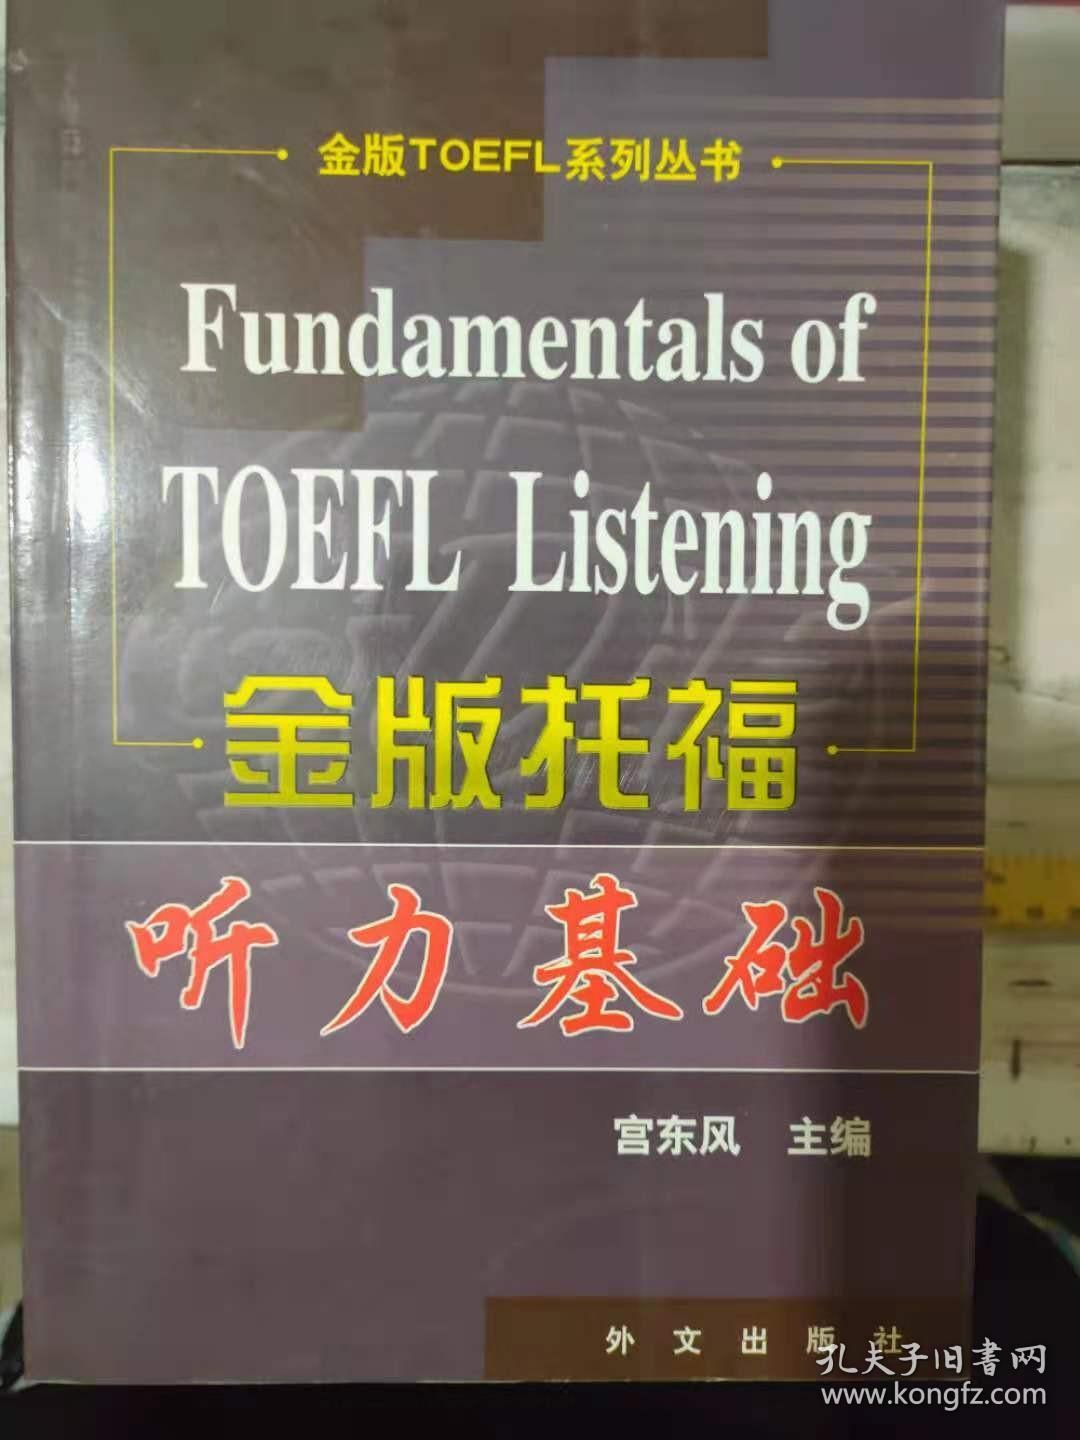 金版TOEFL系列丛书《金版托福听力基础》